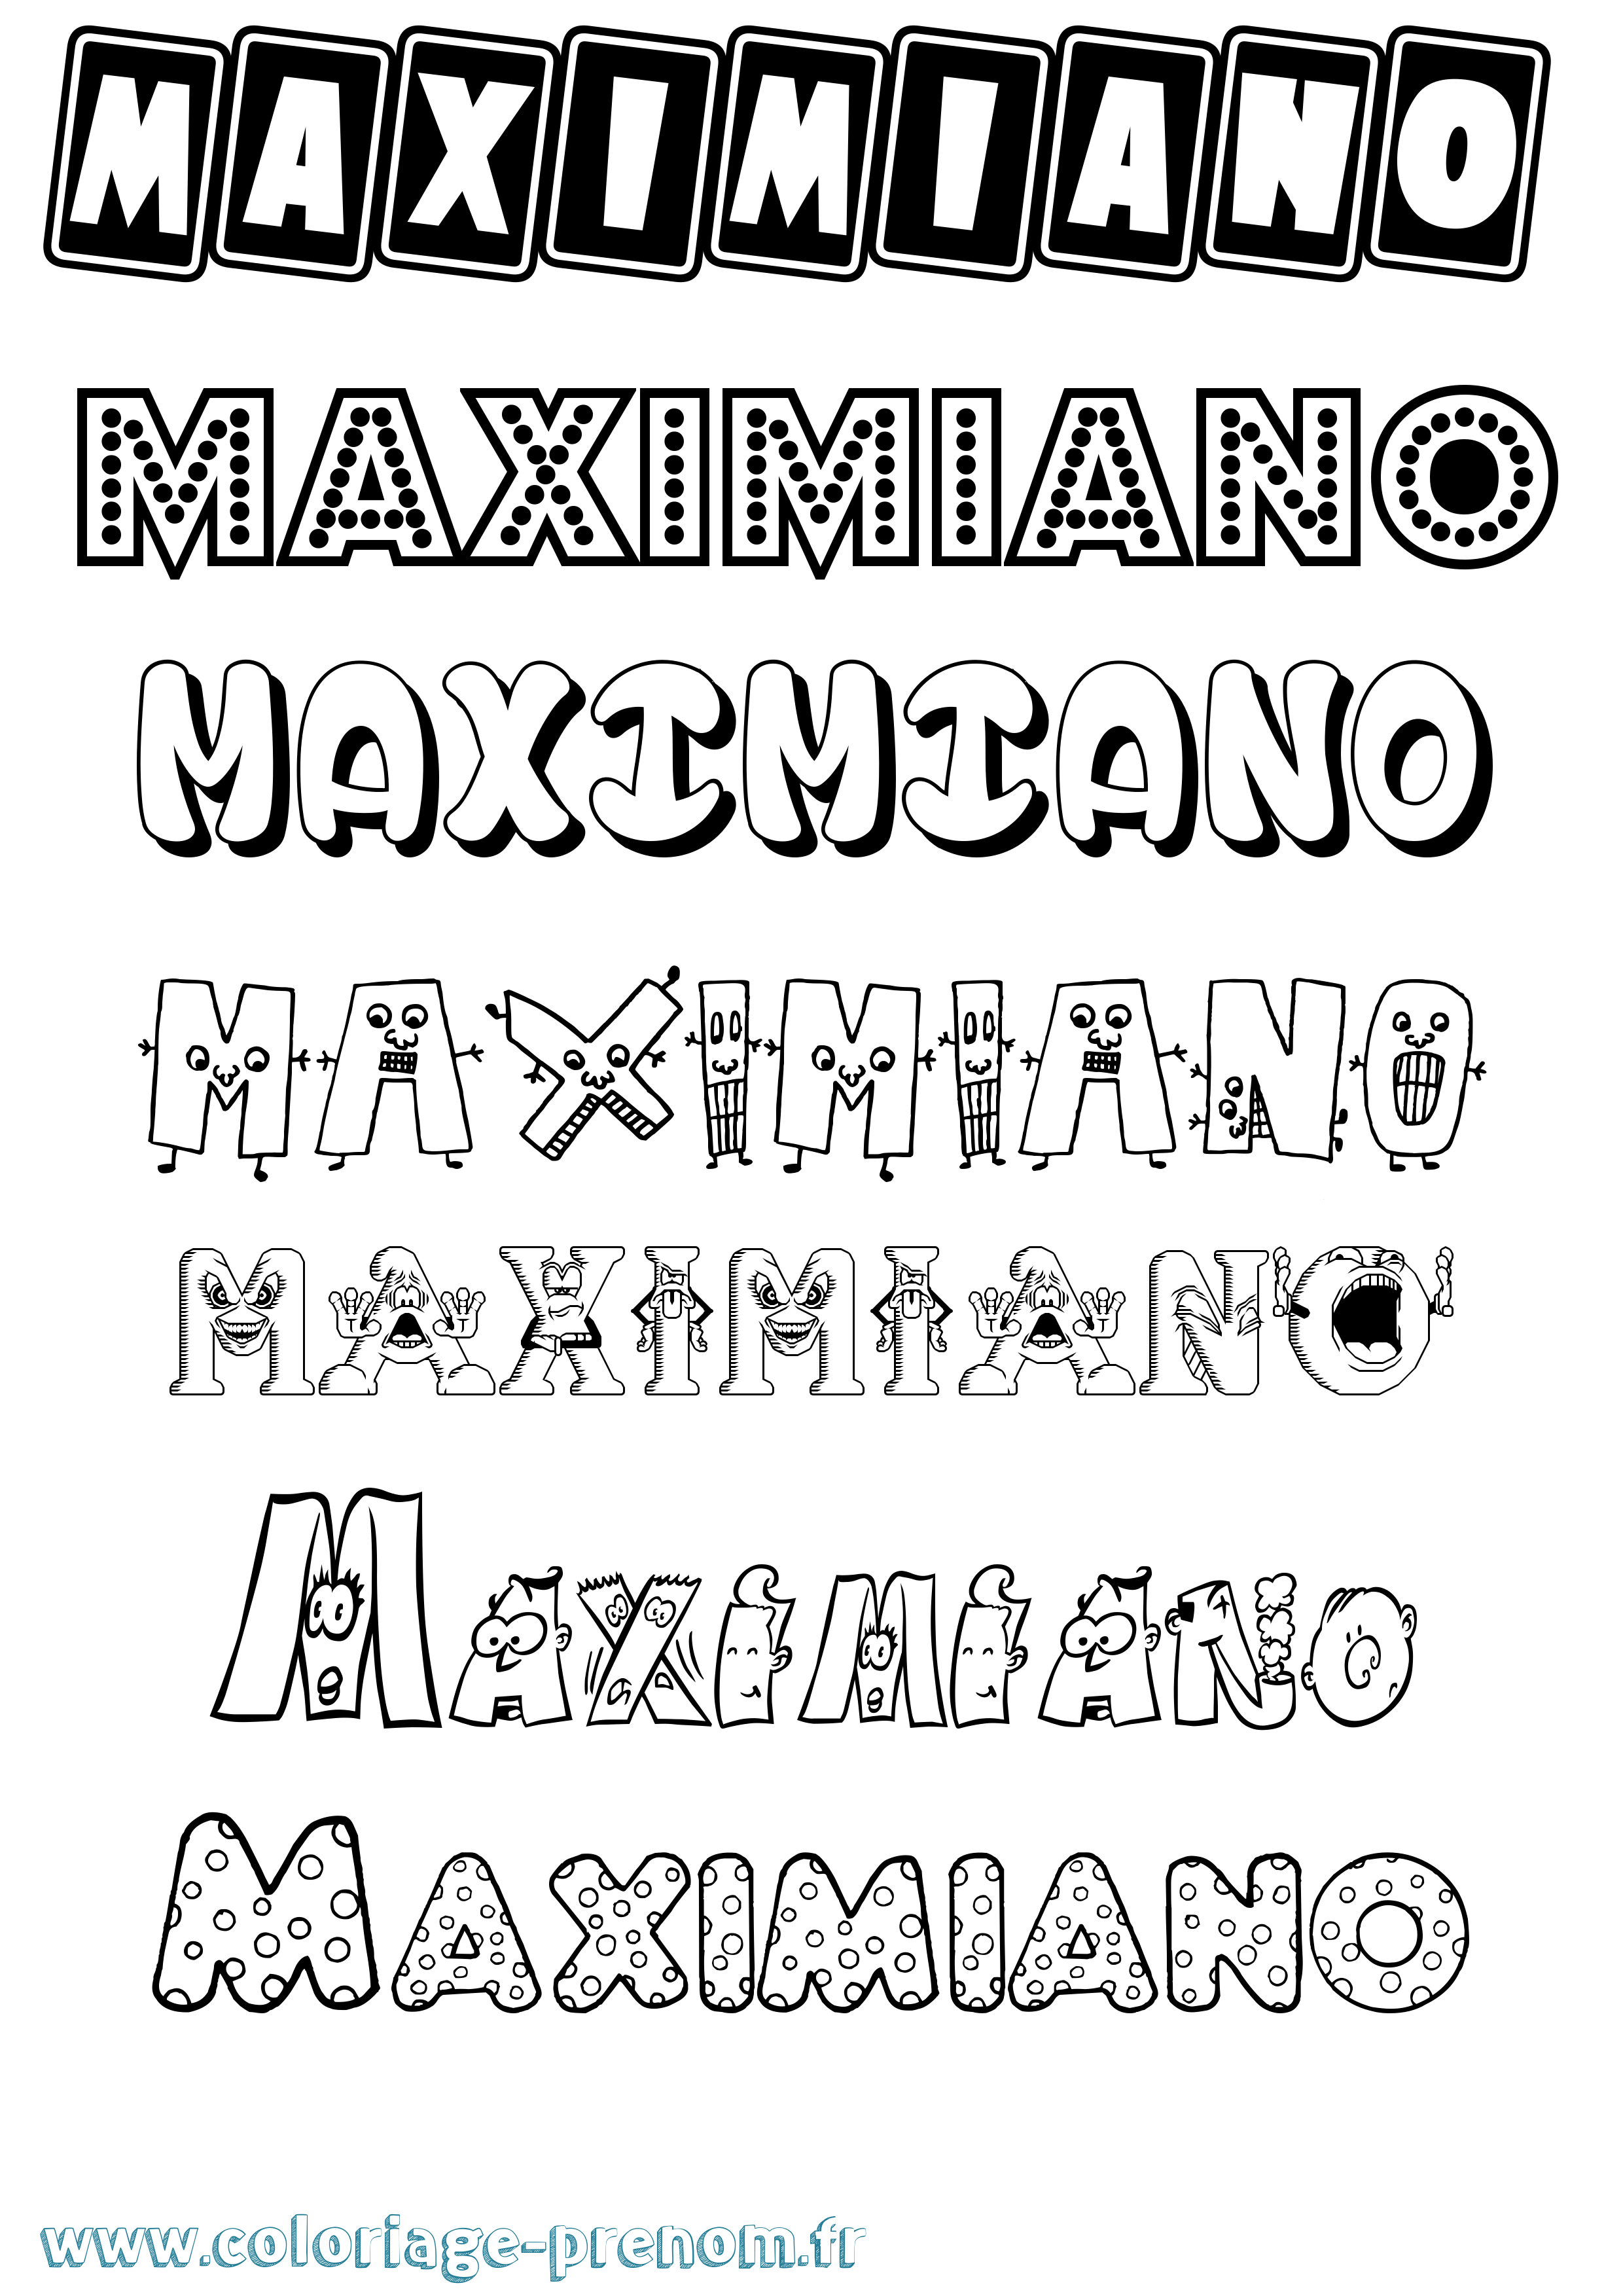 Coloriage prénom Maximiano Fun